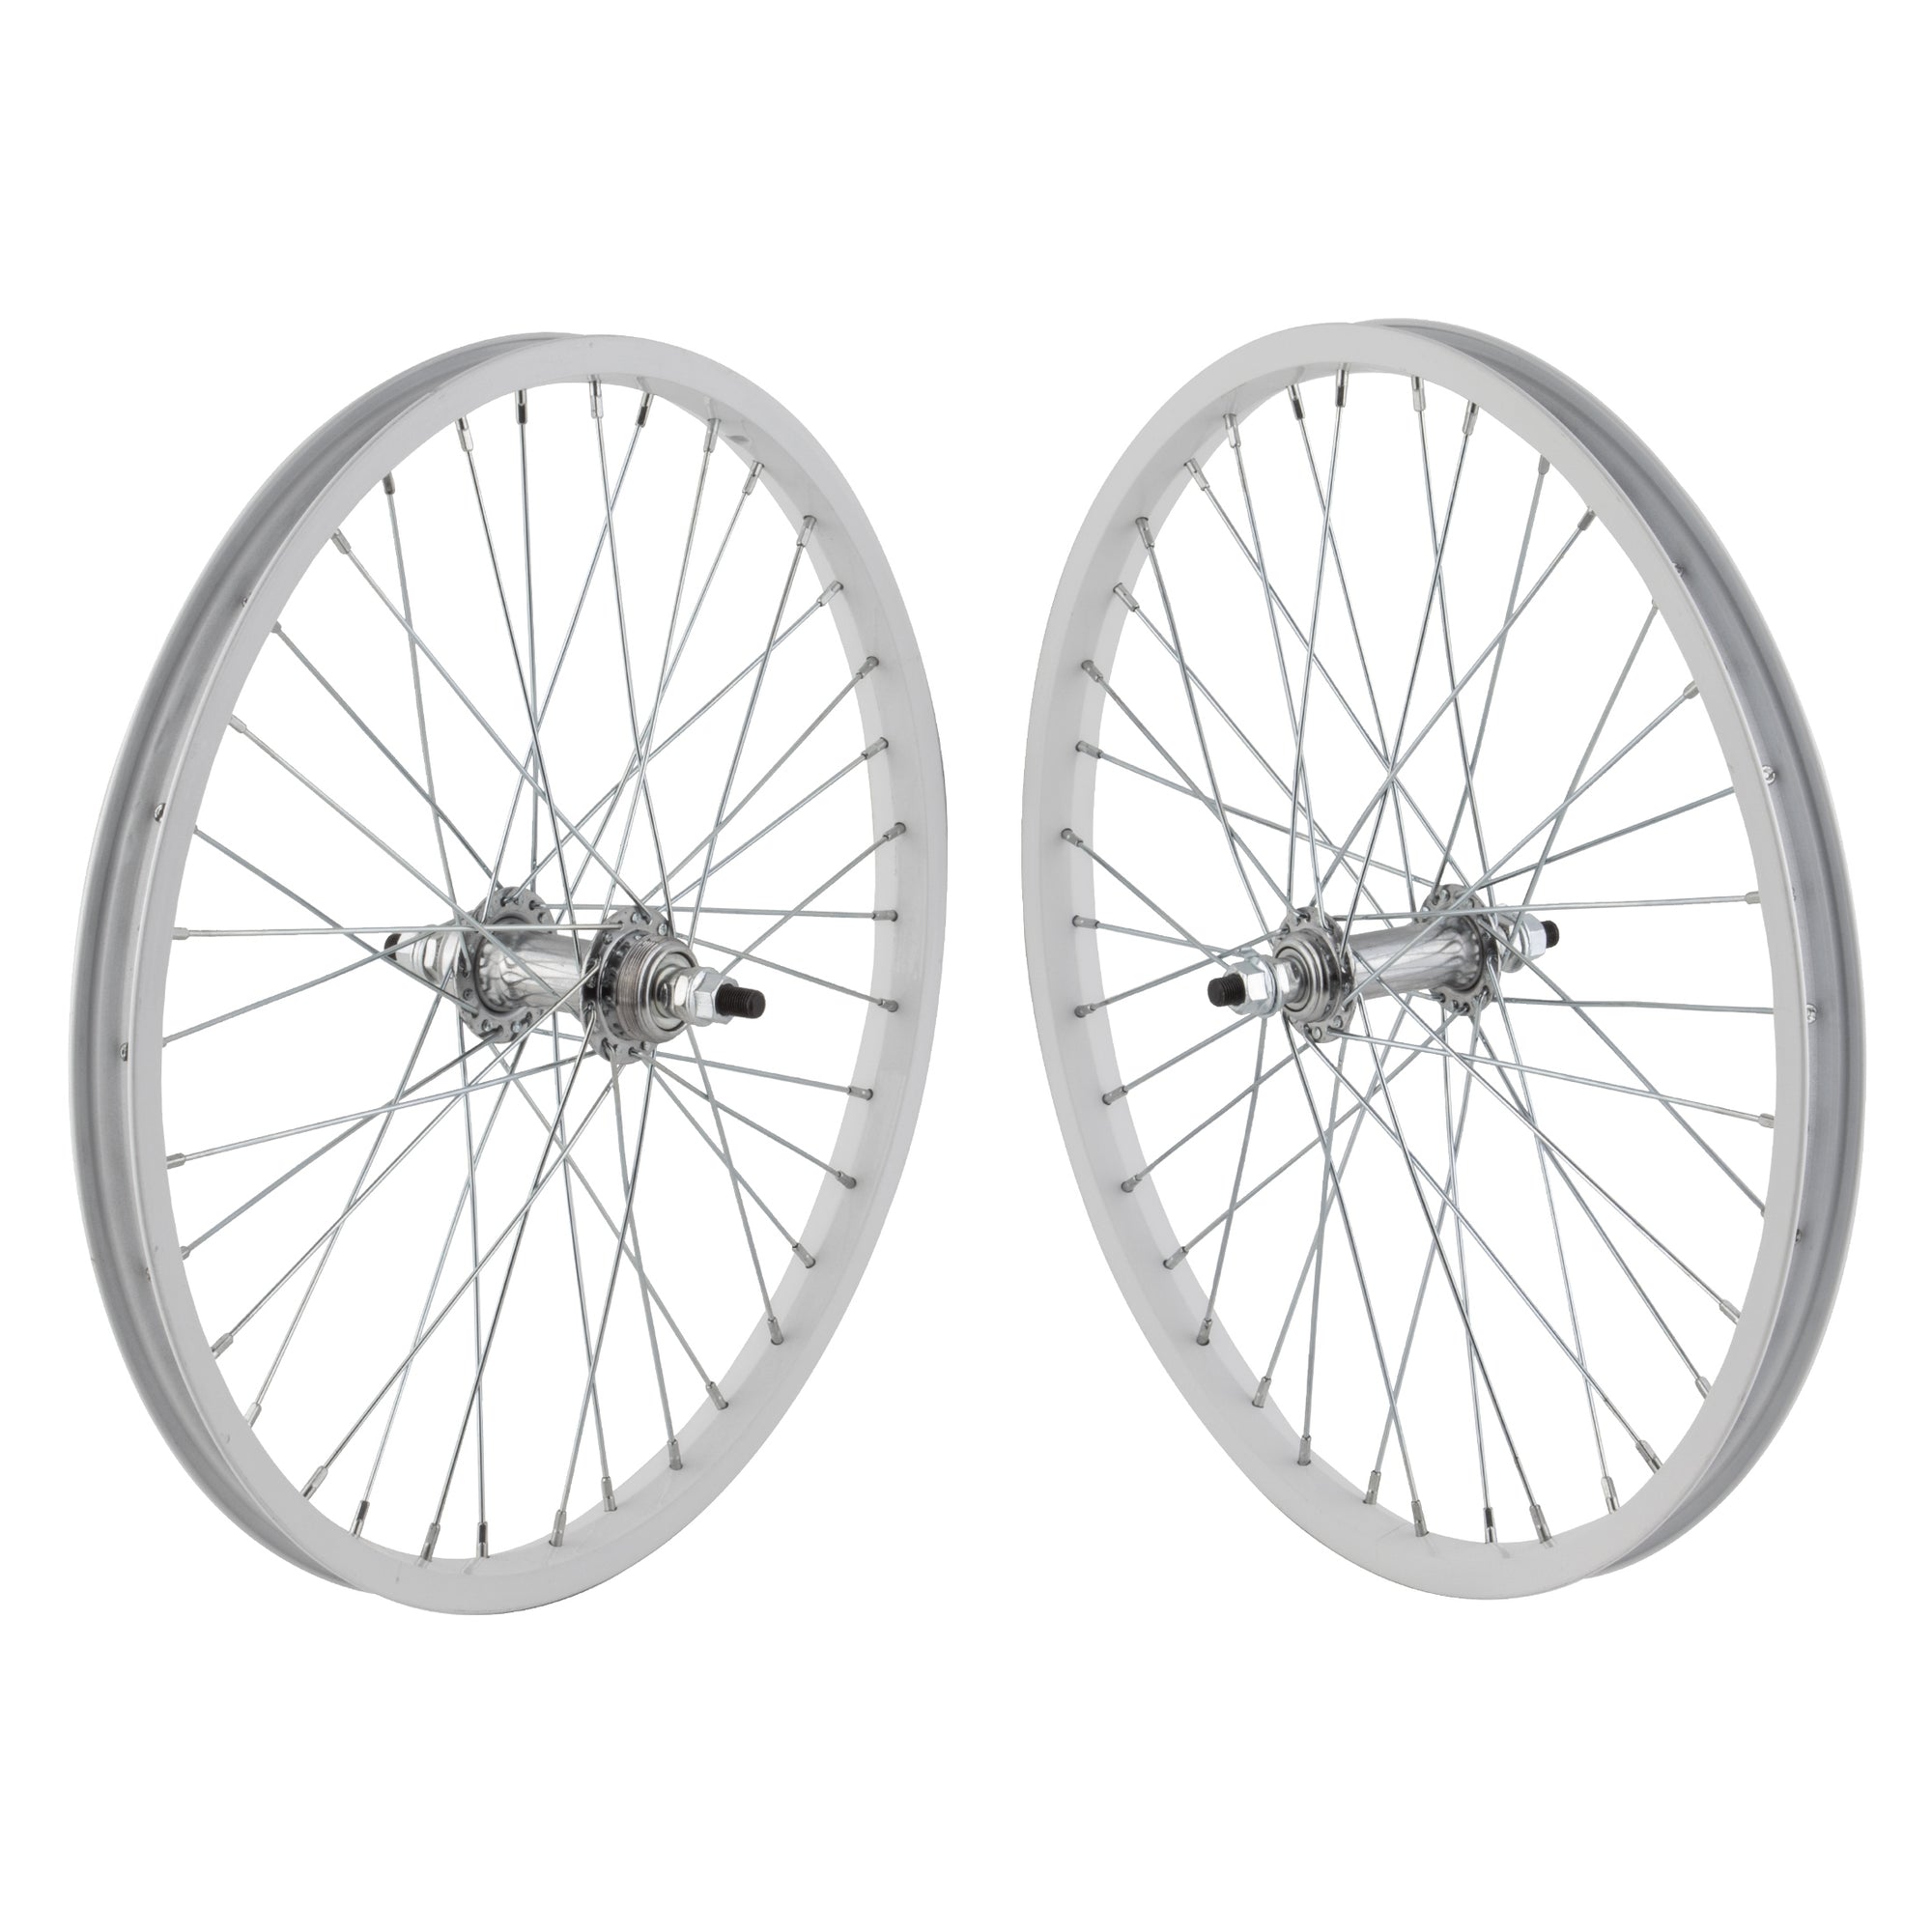 20" Aluminum 519 style BMX Wheelset - Freewheel - Pair - White